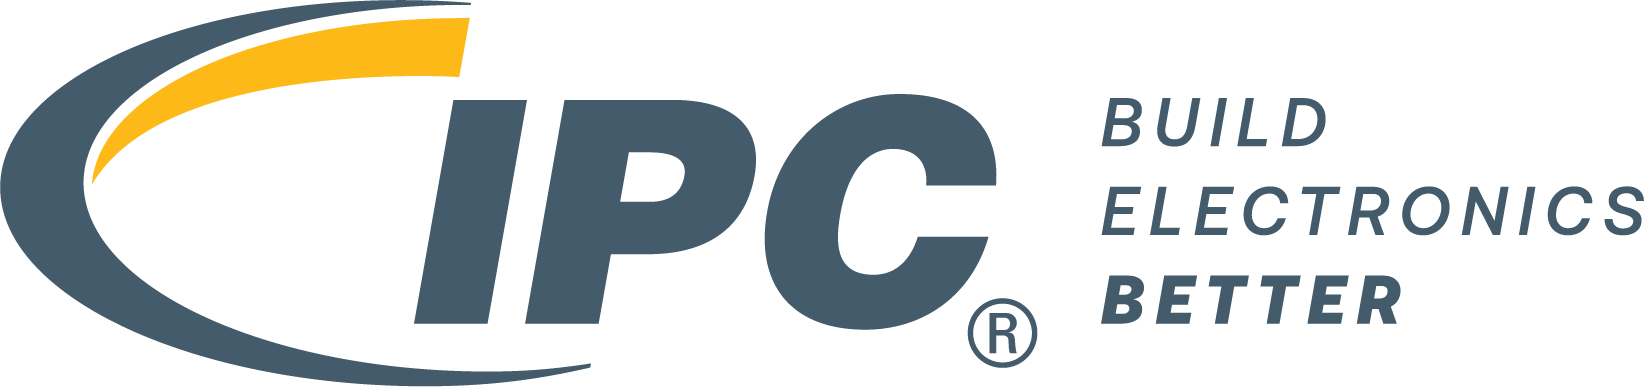 IPC APEX EXPO 2024